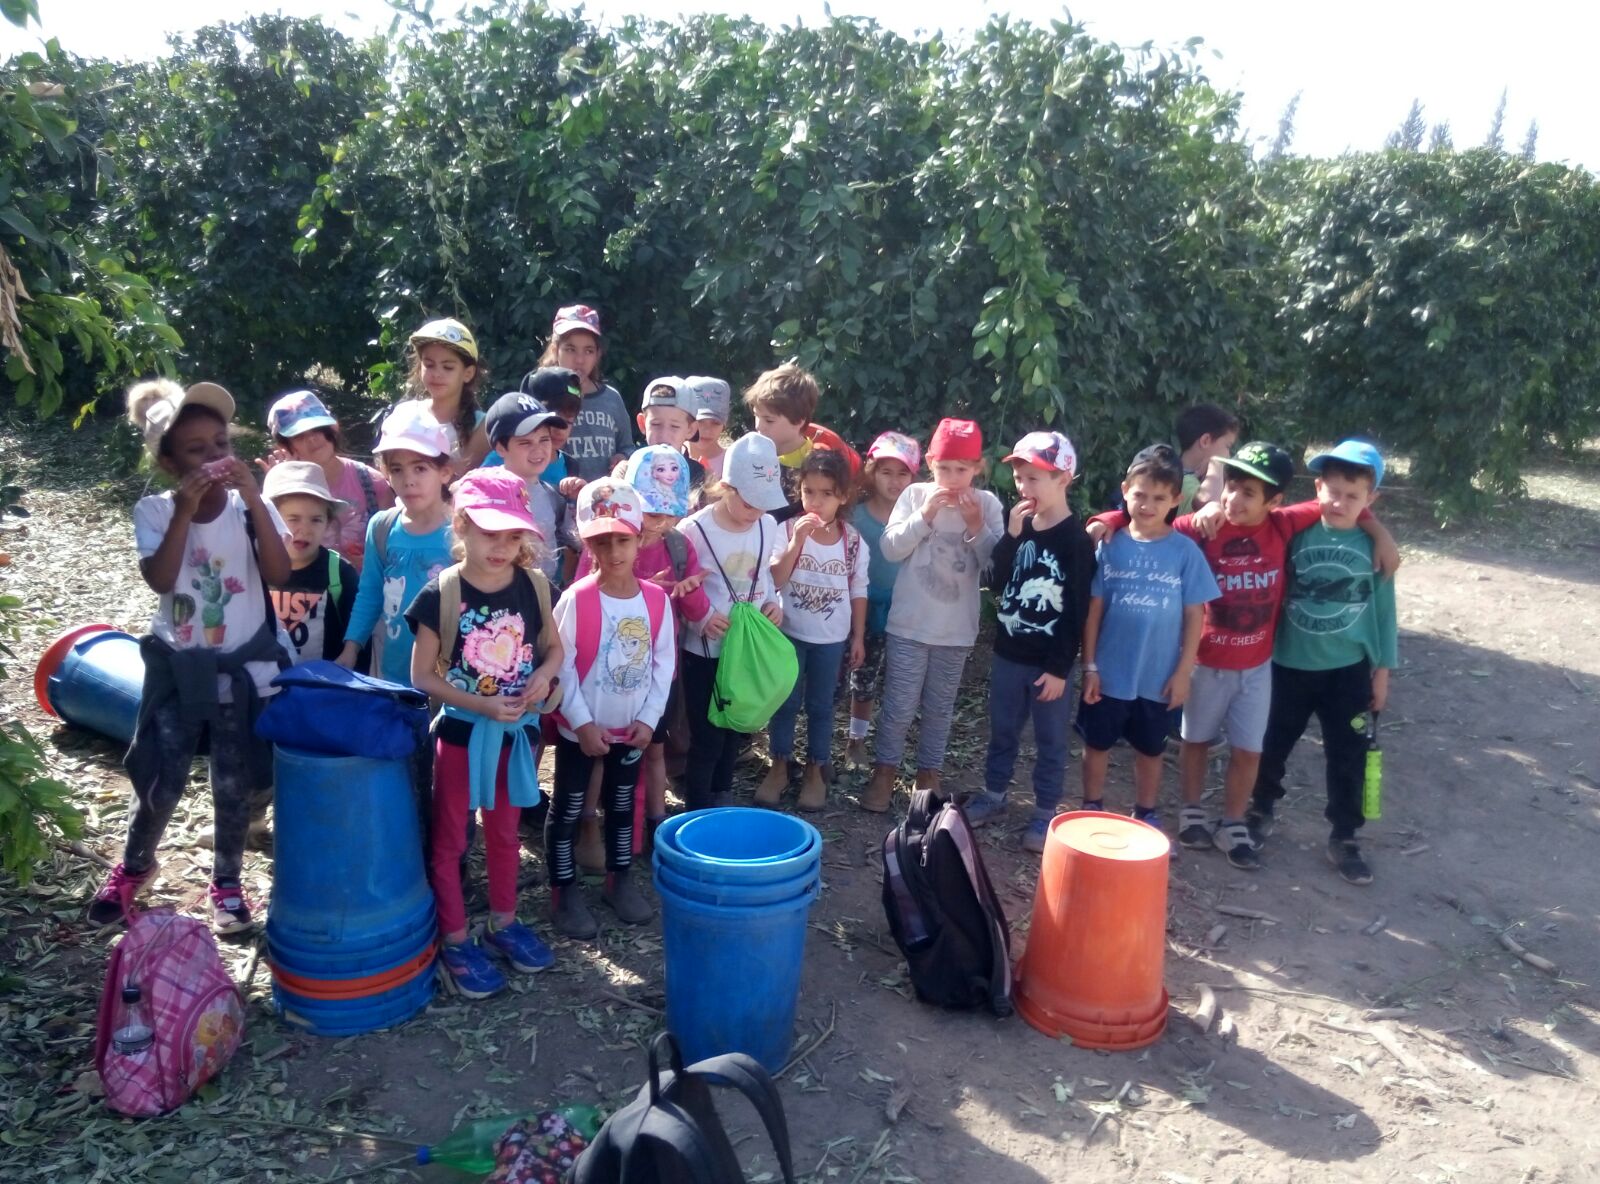 מאות מילדי ואנשי עמק הירדן הגיעו ביום שישי לקטיף תפוזים בשיתוף "לקט ישראל" ובעזרת המועצה האזורית 